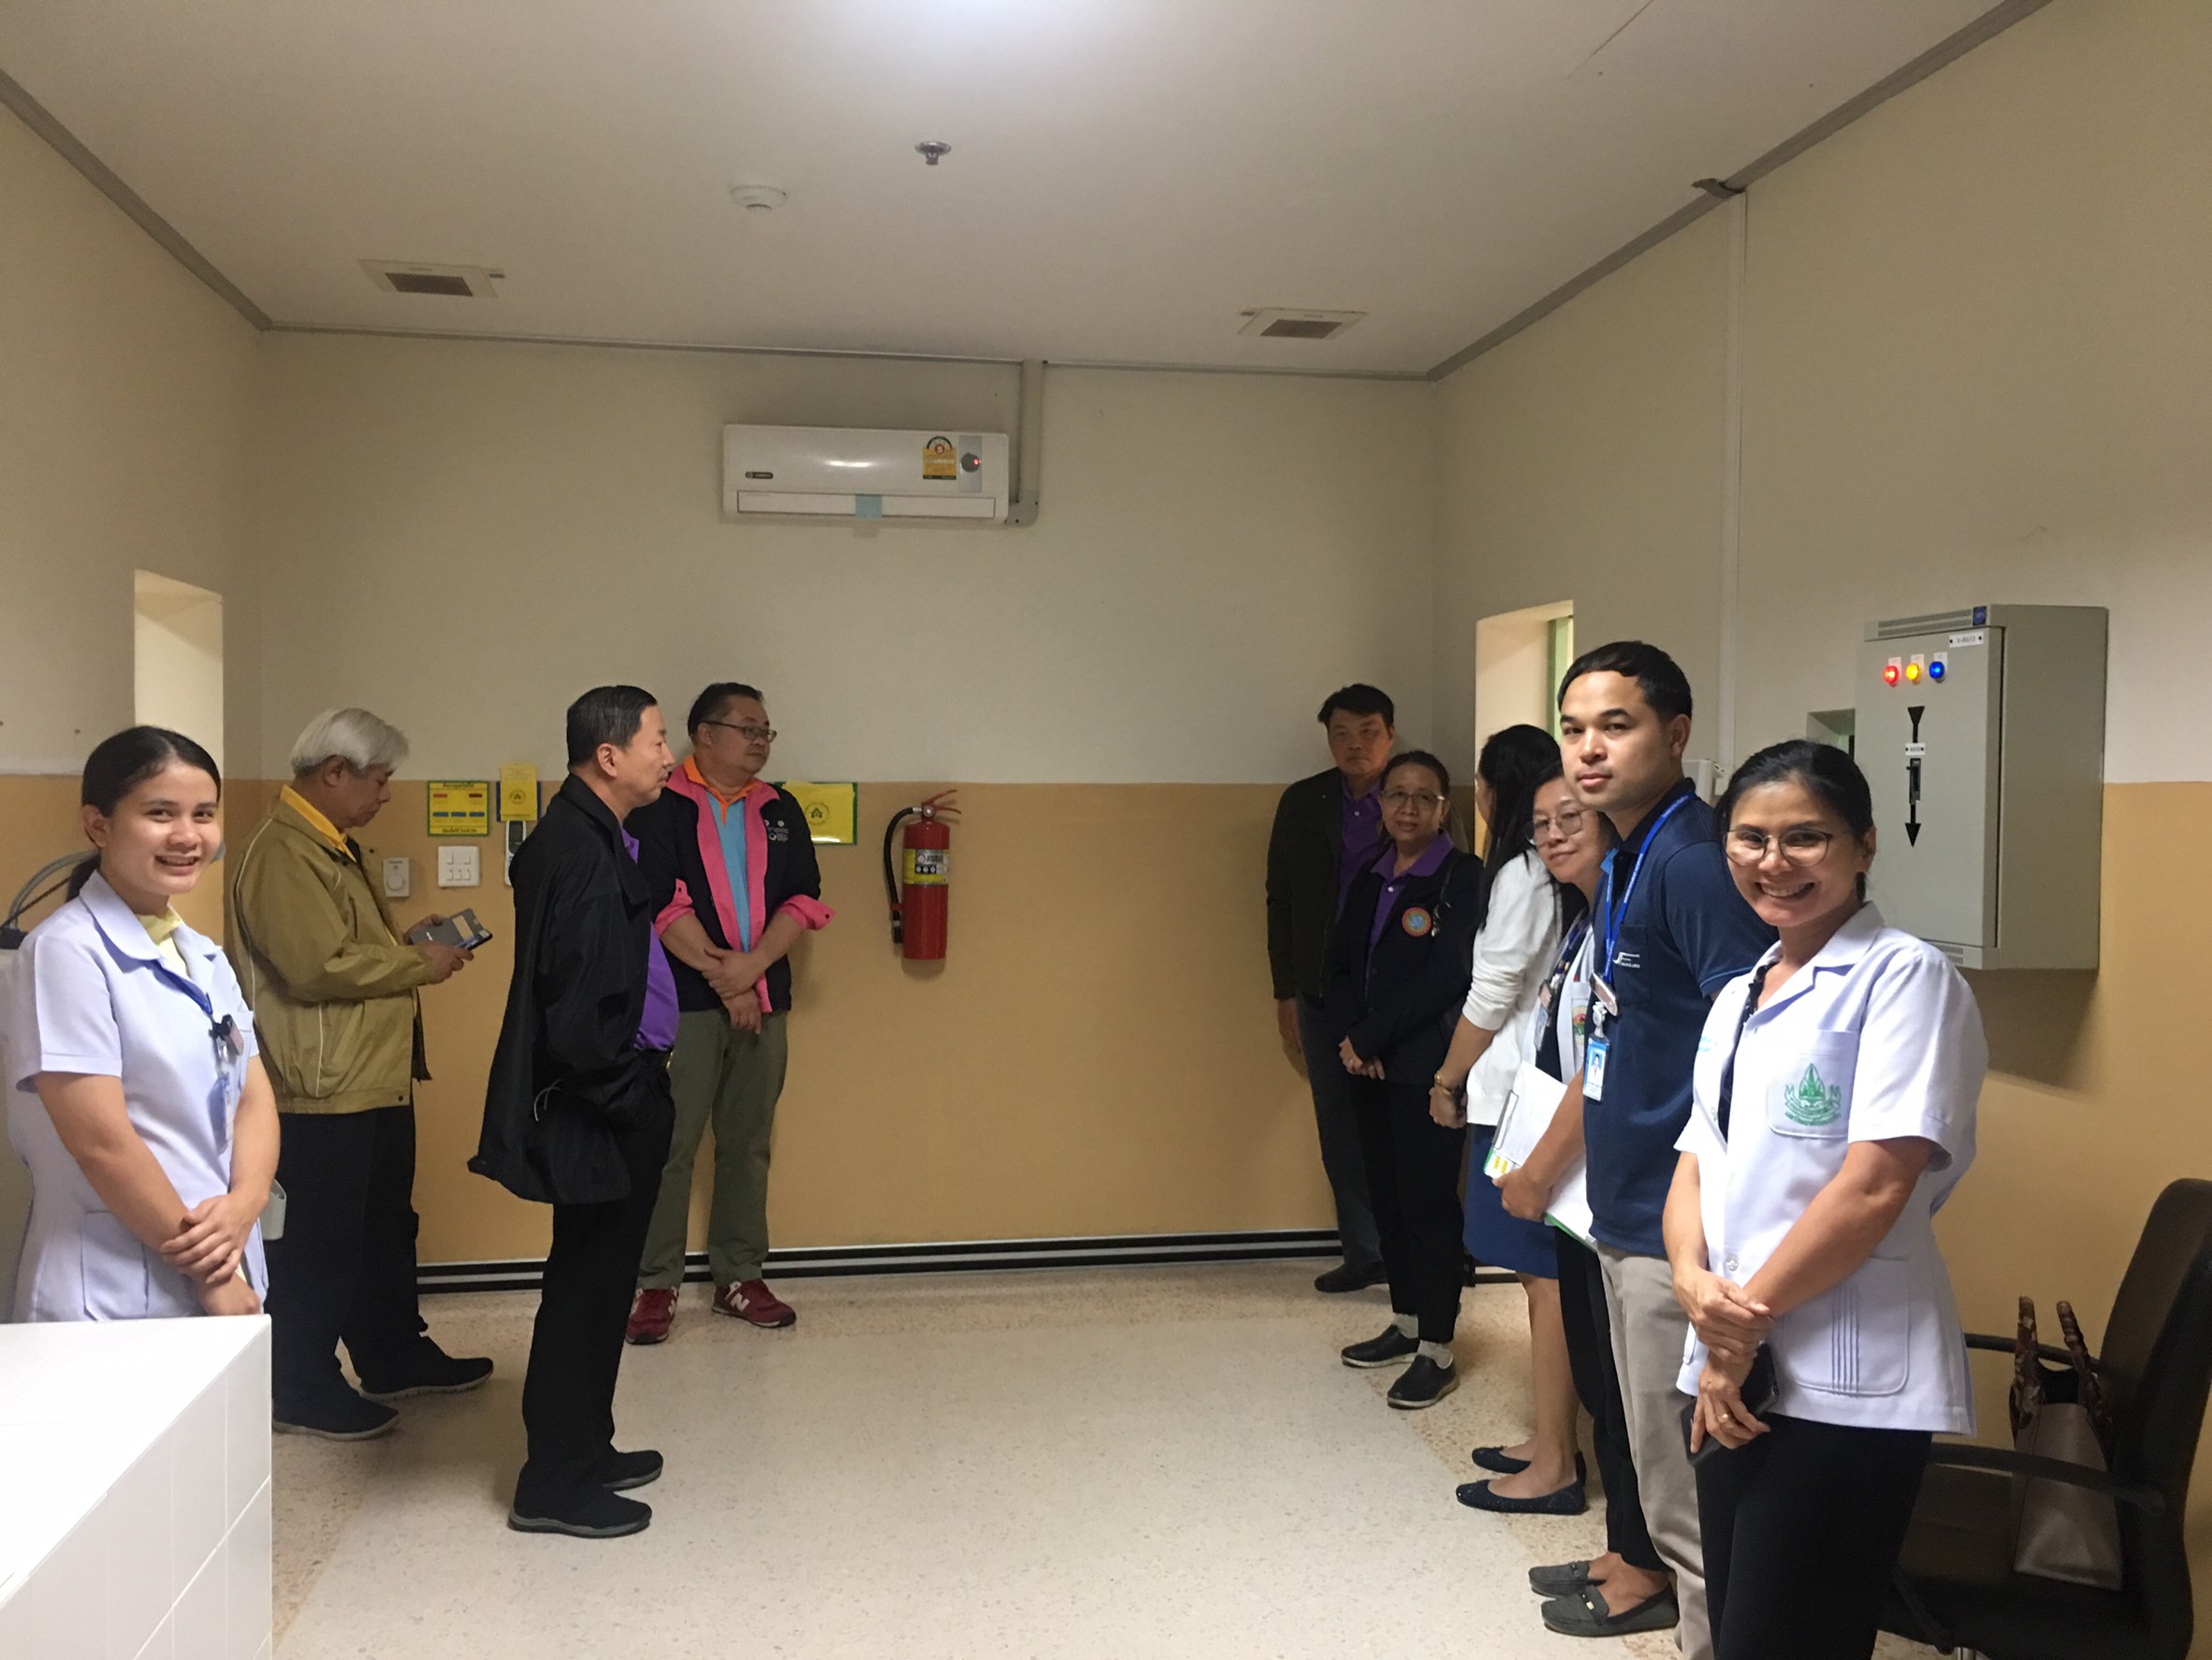 ประชุมวิชาการร่วมกับรังสีการแพทย์แห่งประเทศไทย ครั้งที่17 27-29 พ.ย. - พร้อมเข้าเยี่ยมและให้กำลังใจหน่วยงานรังสีวิทยาในพื้นที่จังหวัดอุบลราชธานีระหว่างวันที่ 25-26 พฤศจิกายน 2562 77